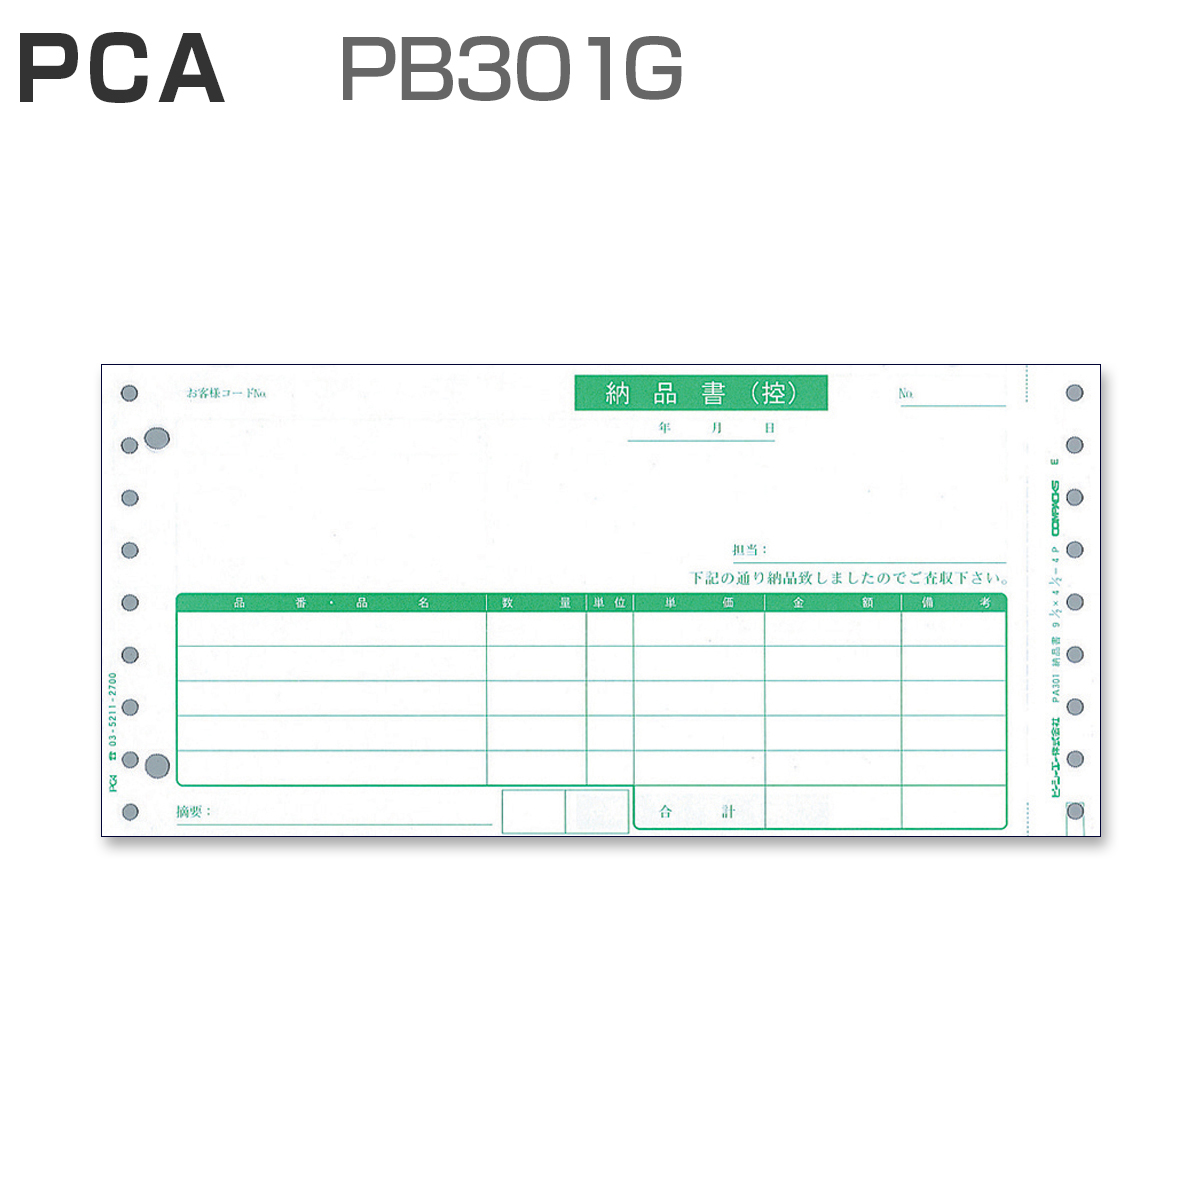 PCA PB301G 納品書 【4枚複写】 (1,000枚)